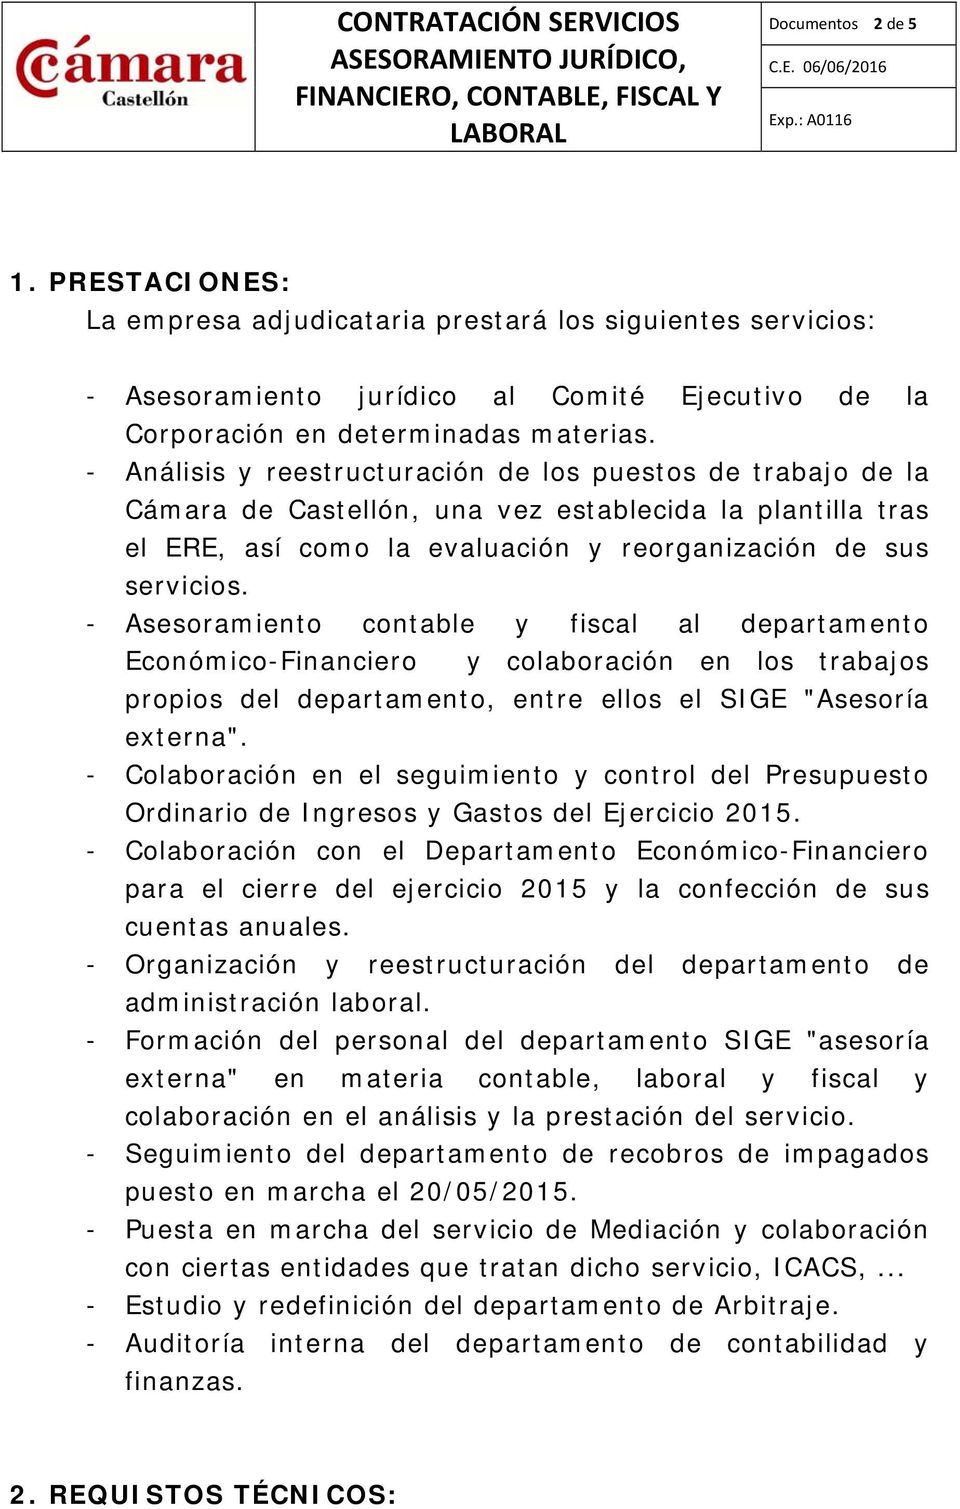 - Análisis y reestructuración de los puestos de trabajo de la Cámara de Castellón, una vez establecida la plantilla tras el ERE, así como la evaluación y reorganización de sus servicios.